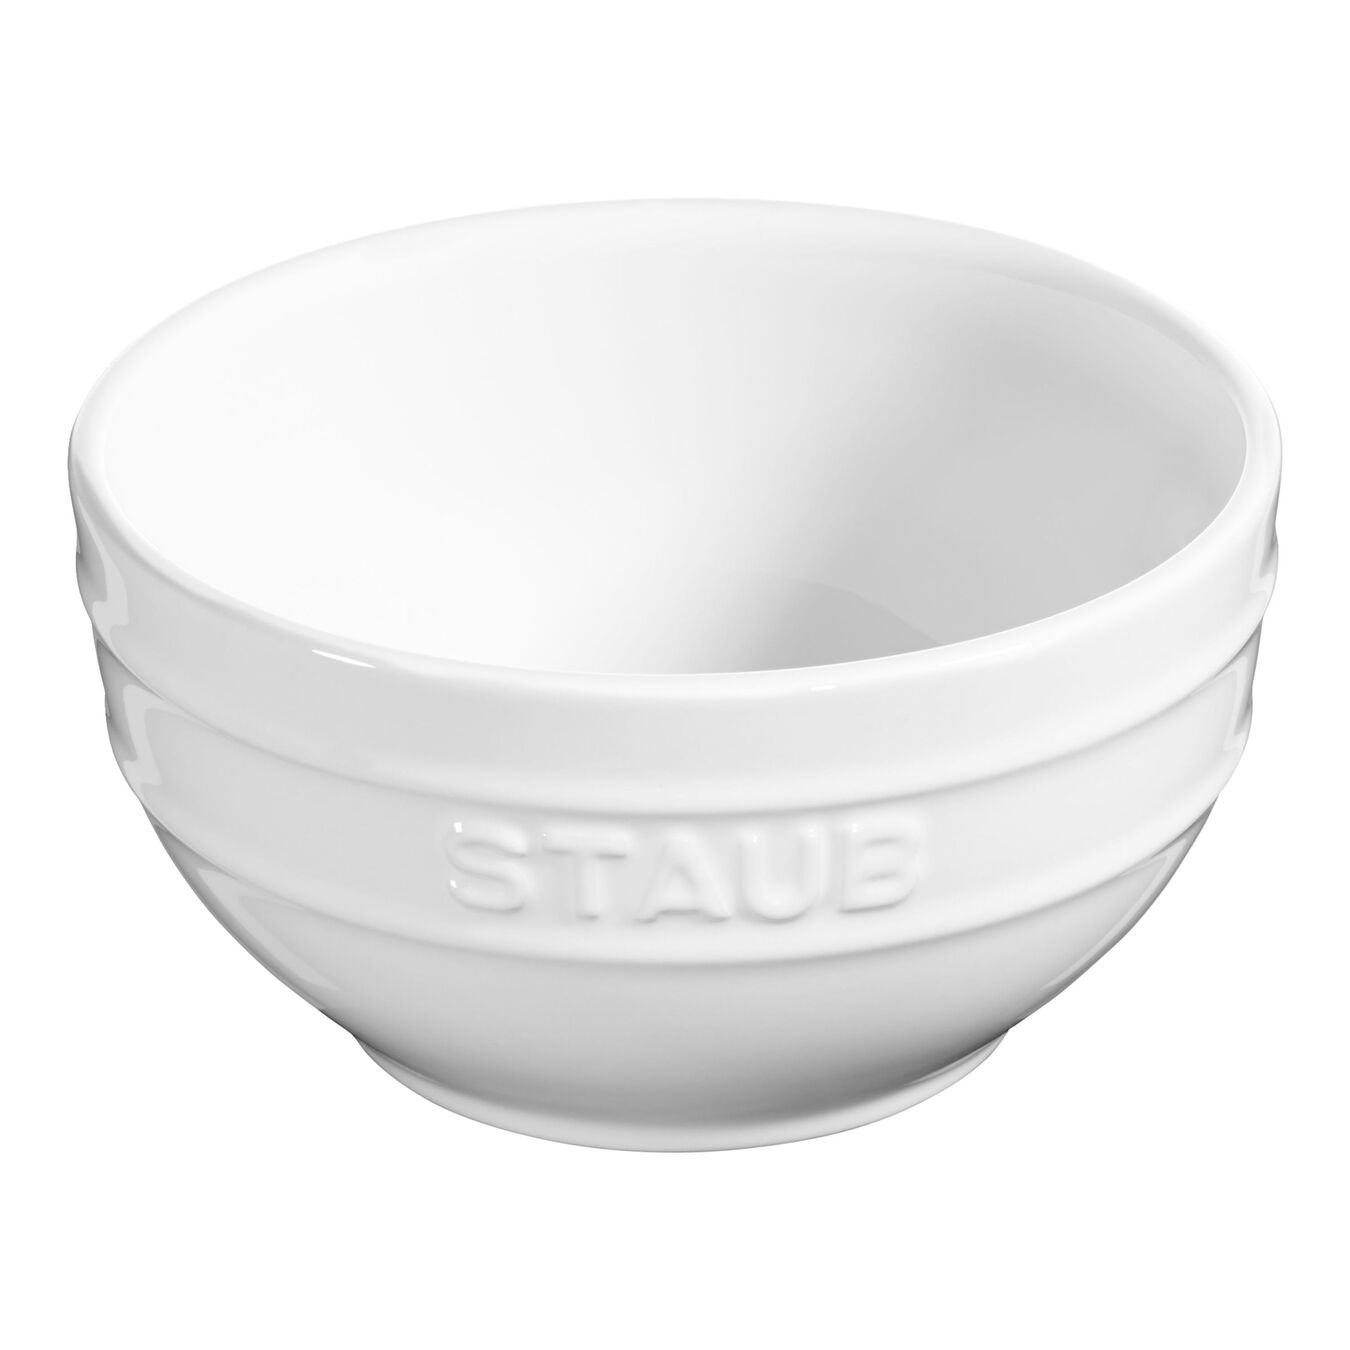 14 cm ceramic round Bowl, pure-white,,large 1